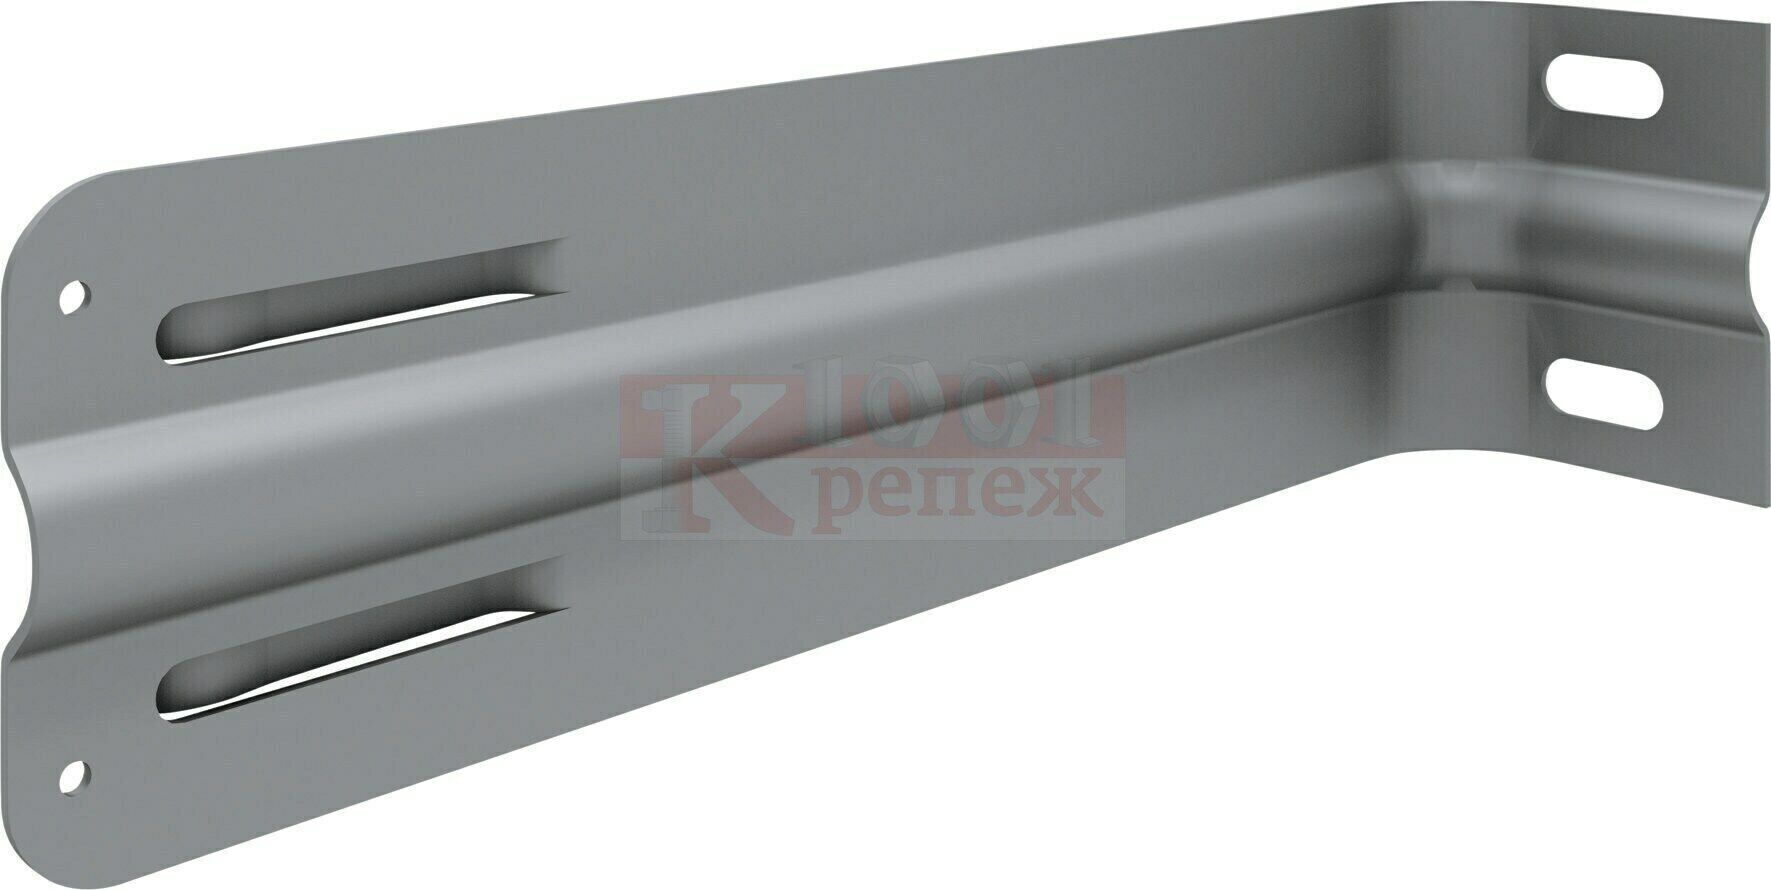 MFT-GS R Кронштейн HILTI усиленный с полимерным покрытием для фасадных систем оц. сталь, 72x90x310 мм